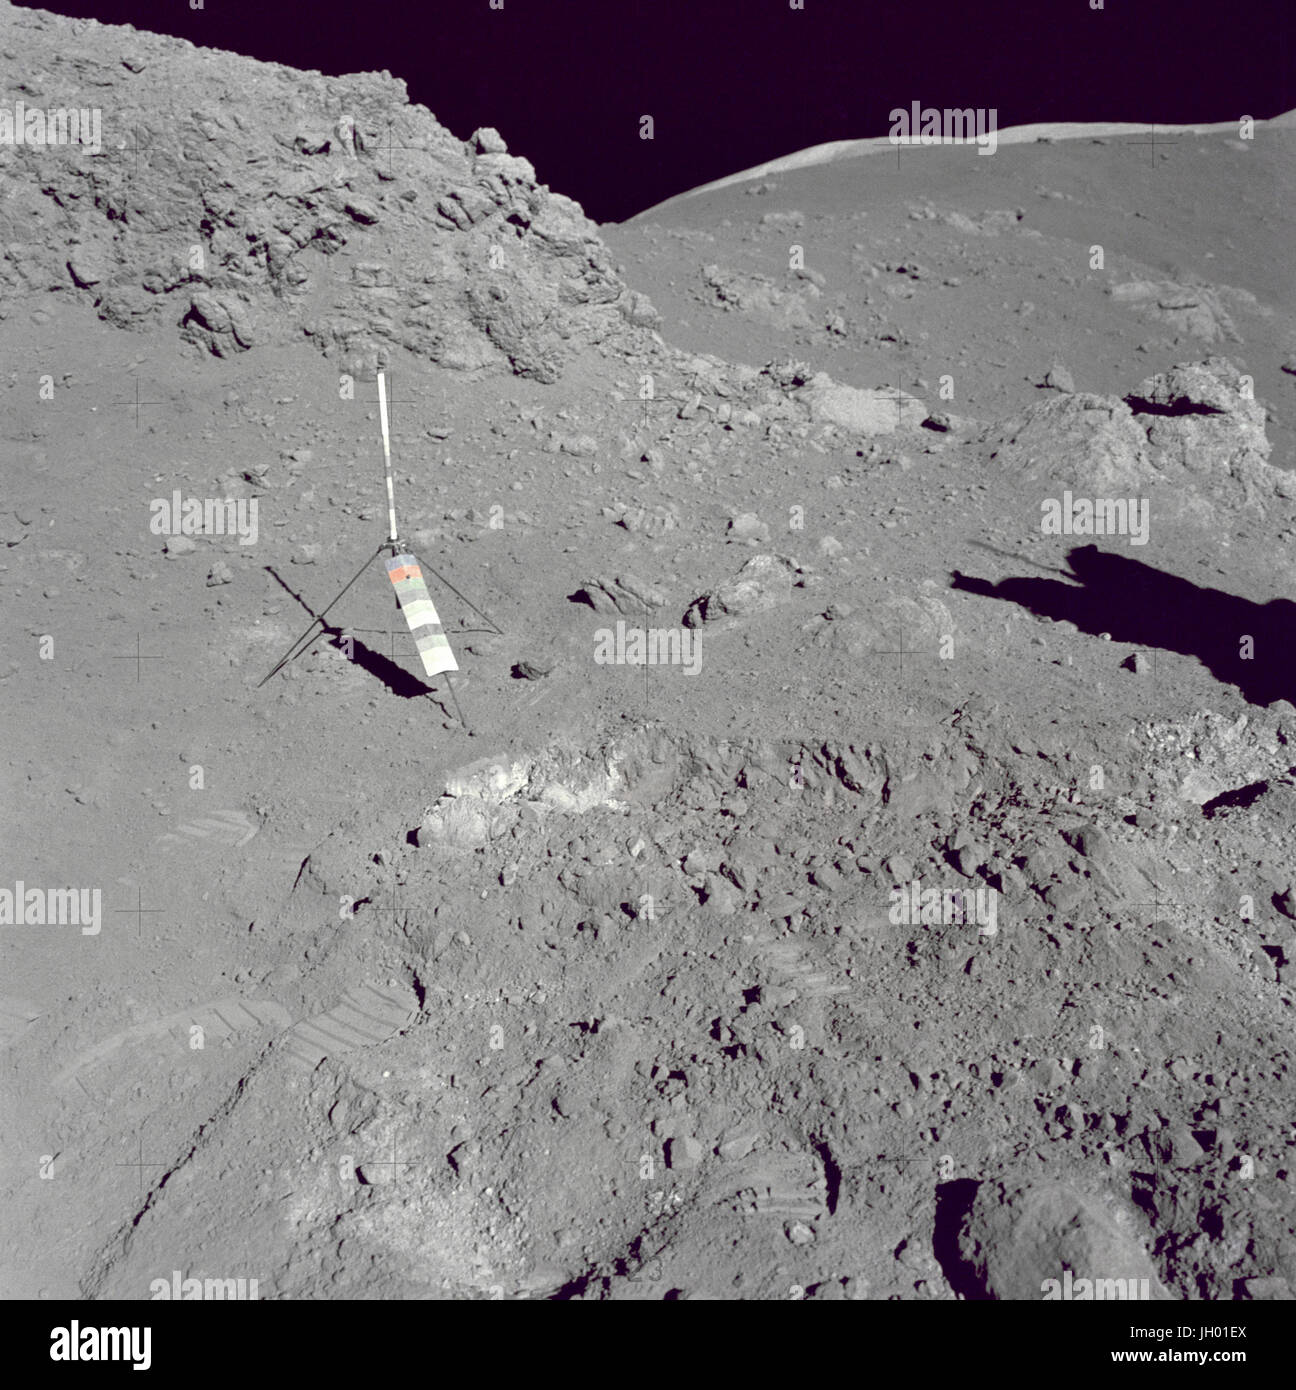 Orange Boden Entdeckung. Ein Blick auf die Umgebung an Station 4 (Shorty-Krater) zeigt die hoch-publizierten Orange soil die der Apollo 17 Besatzungsmitglieder auf dem Mond gefunden, während die zweite Apollo 17 Extravehicular Activity (EVA-2) am Landeplatz Taurus-Littrow. Die Stativ-ähnliches Objekt ist der Gnomon und photometrischen Chart-Baugruppe, die als fotografische Referenz zum Herstellen von lokalen vertikaler Sonnenwinkel, Graustufen- und lunar verwendet wird. Gnomon ist eines der Apollo lunar Geologie Handwerkzeuge... Fotograf: NASA Stockfoto